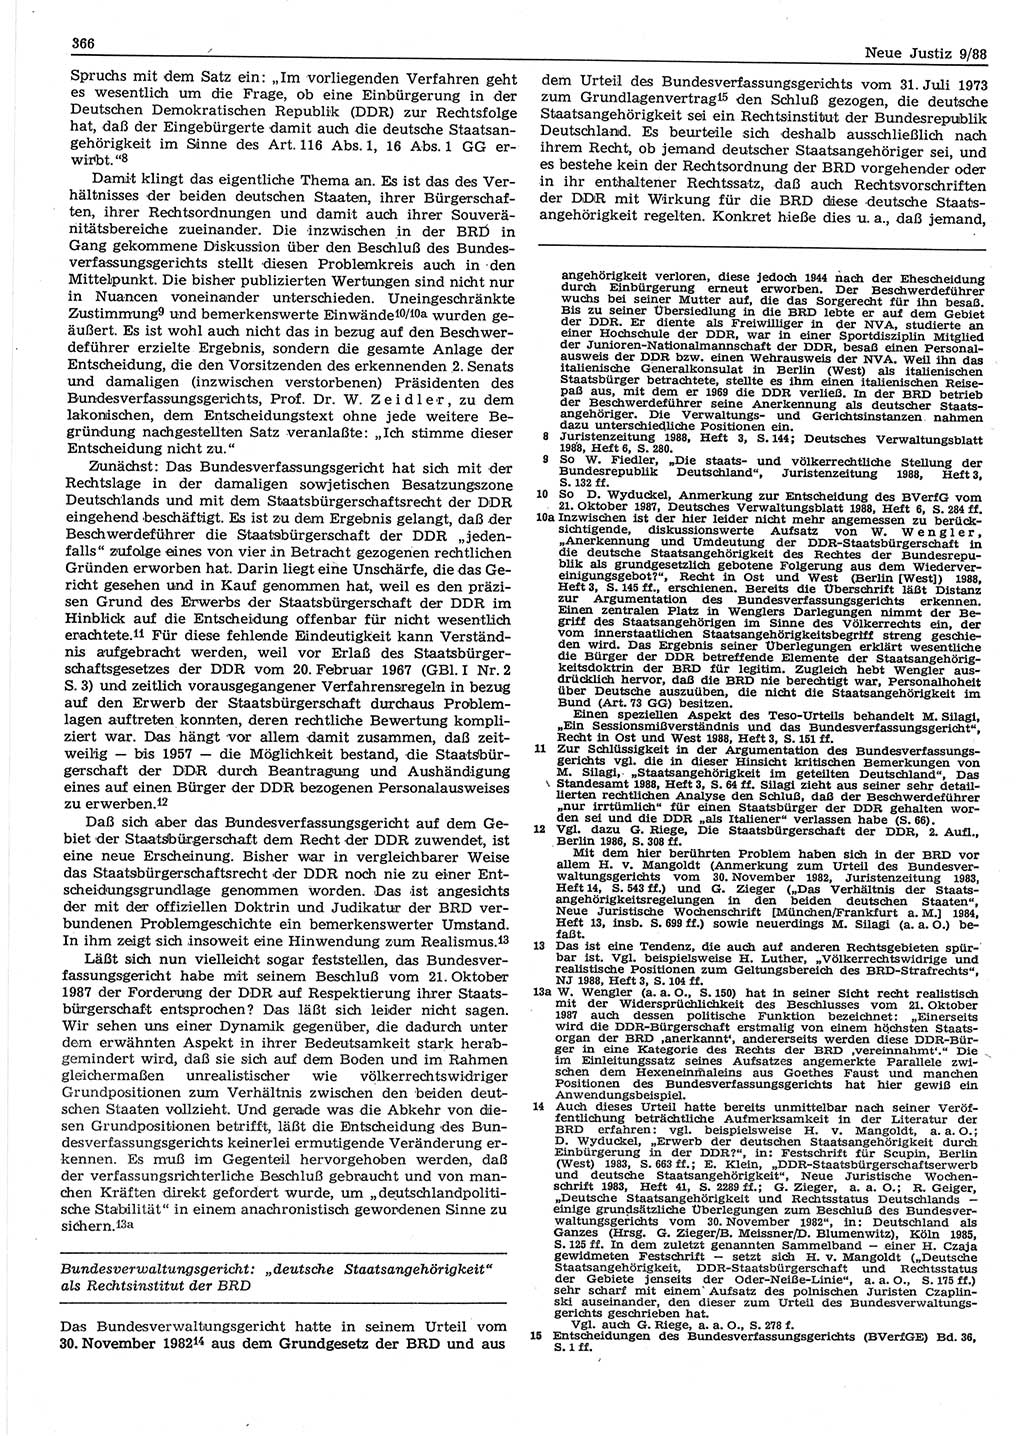 Neue Justiz (NJ), Zeitschrift für sozialistisches Recht und Gesetzlichkeit [Deutsche Demokratische Republik (DDR)], 42. Jahrgang 1988, Seite 366 (NJ DDR 1988, S. 366)